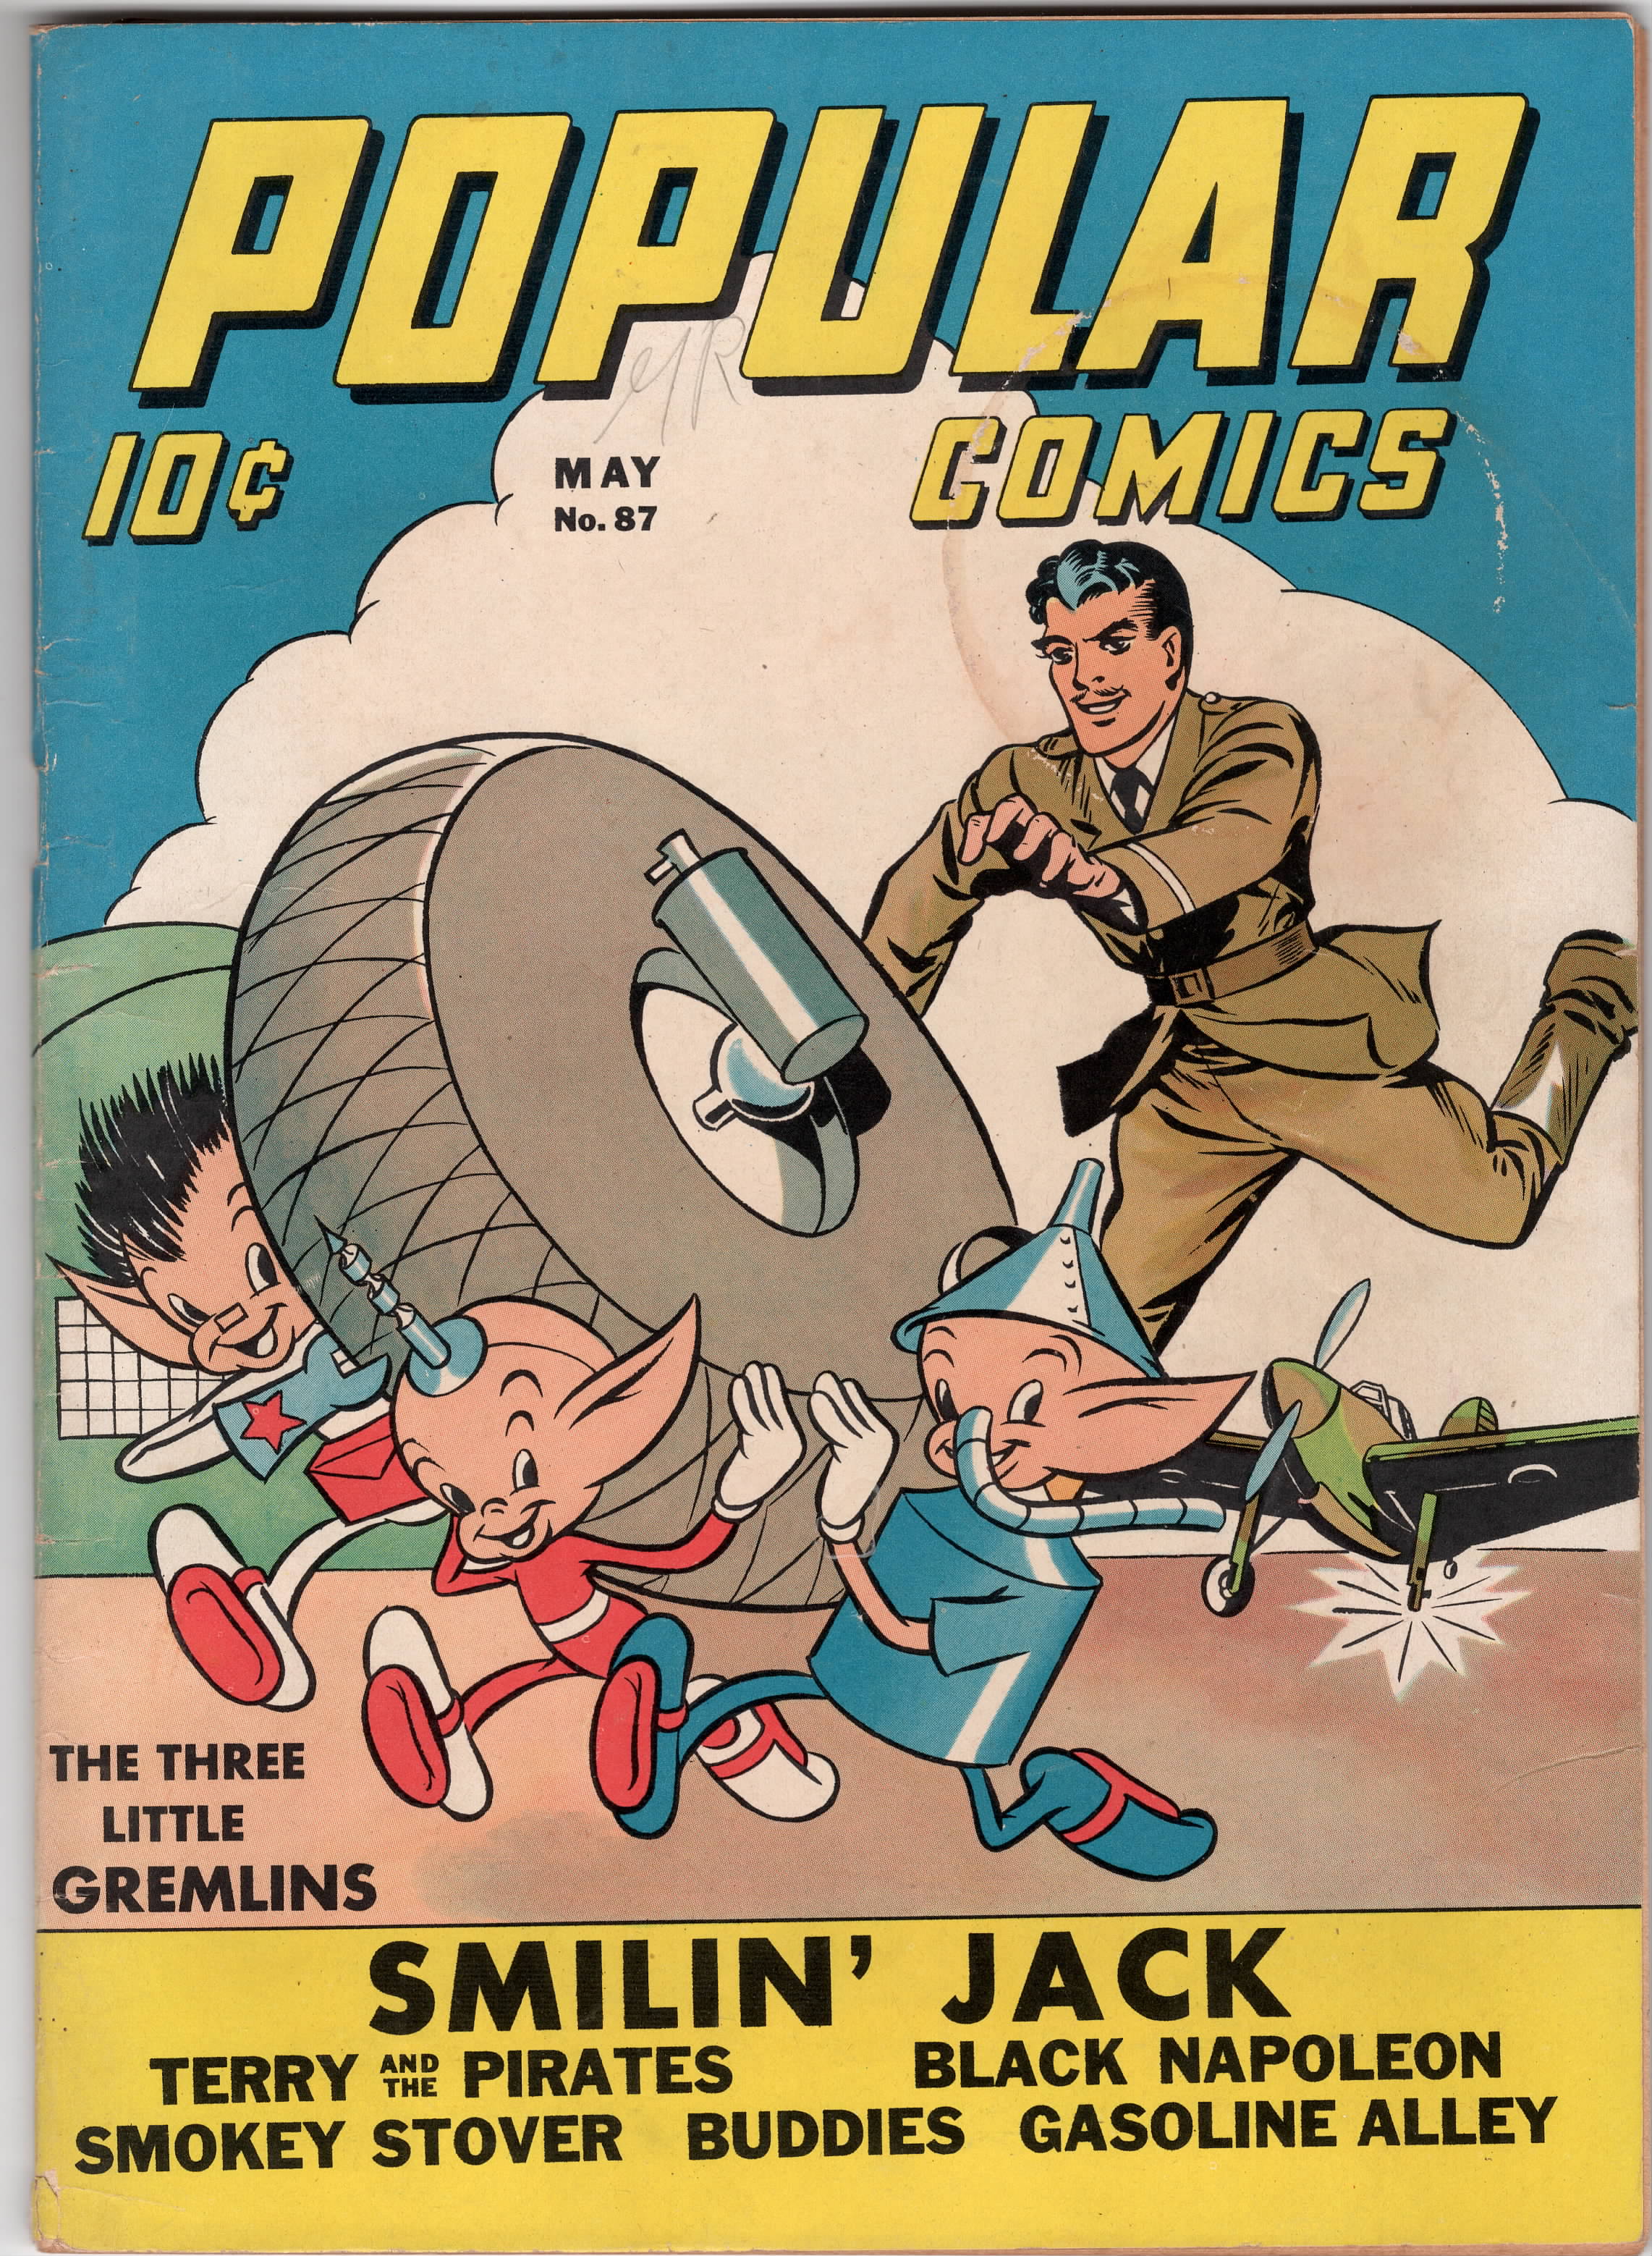 Popular Comics #87